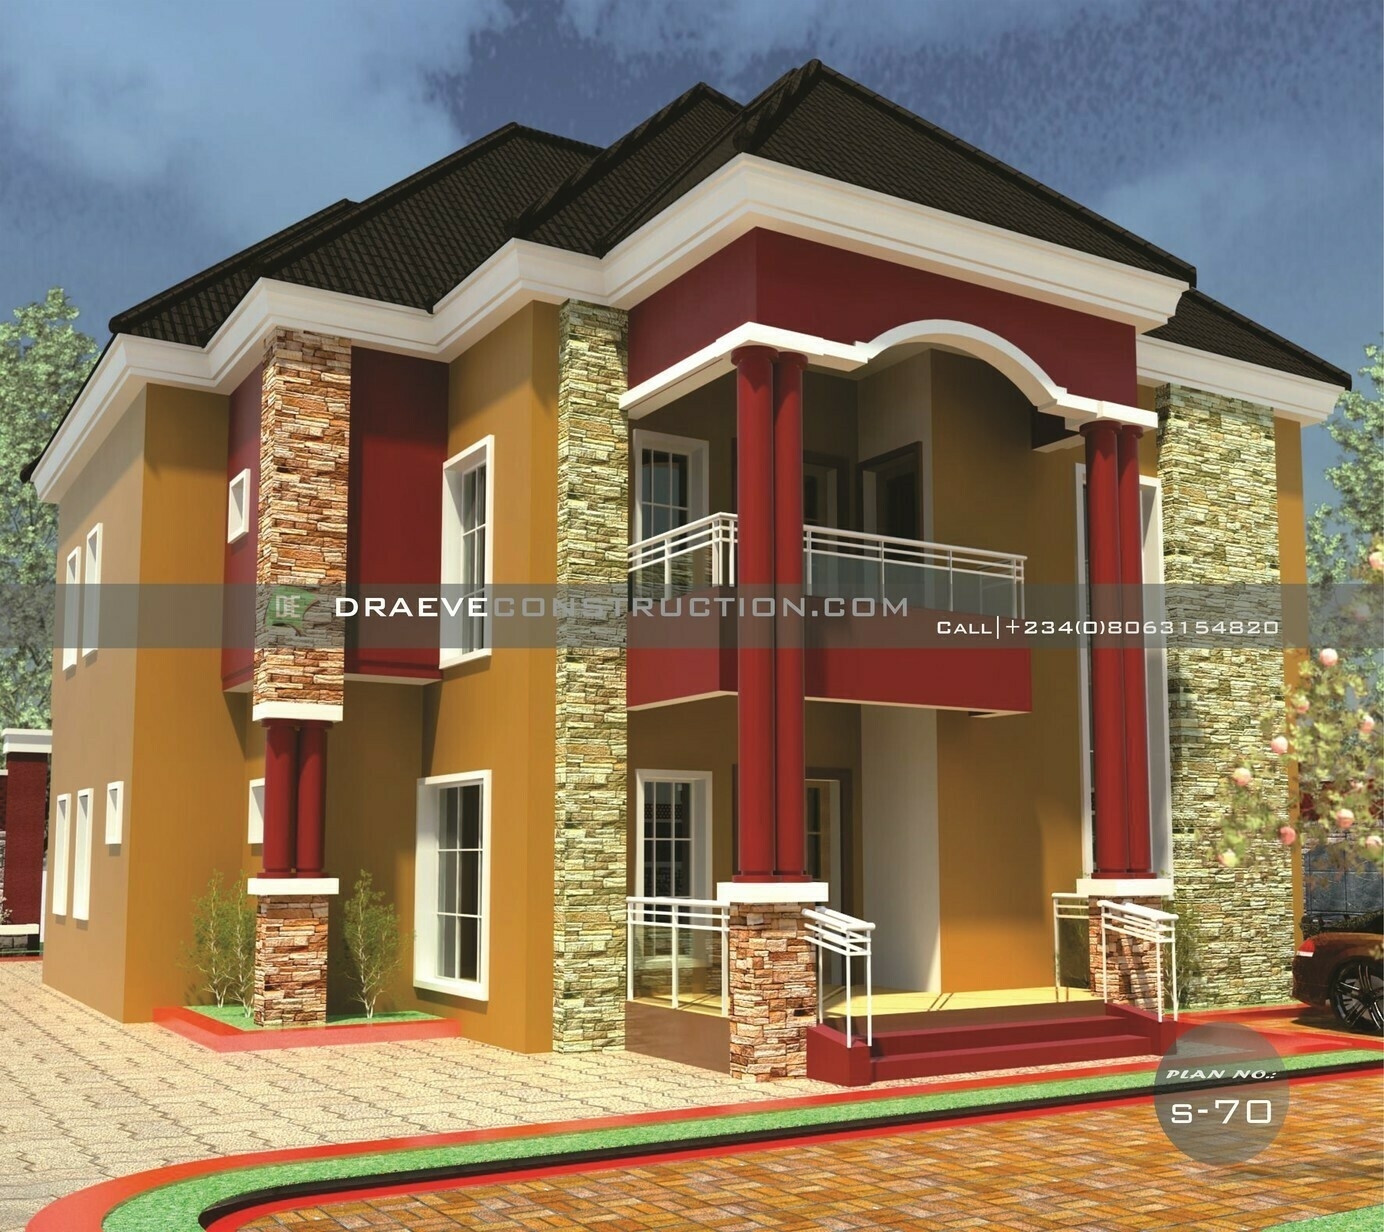 Brilliant 4 bedroom duplex floor plan | nigerian house plans in samples of nigeria duplex floor plans